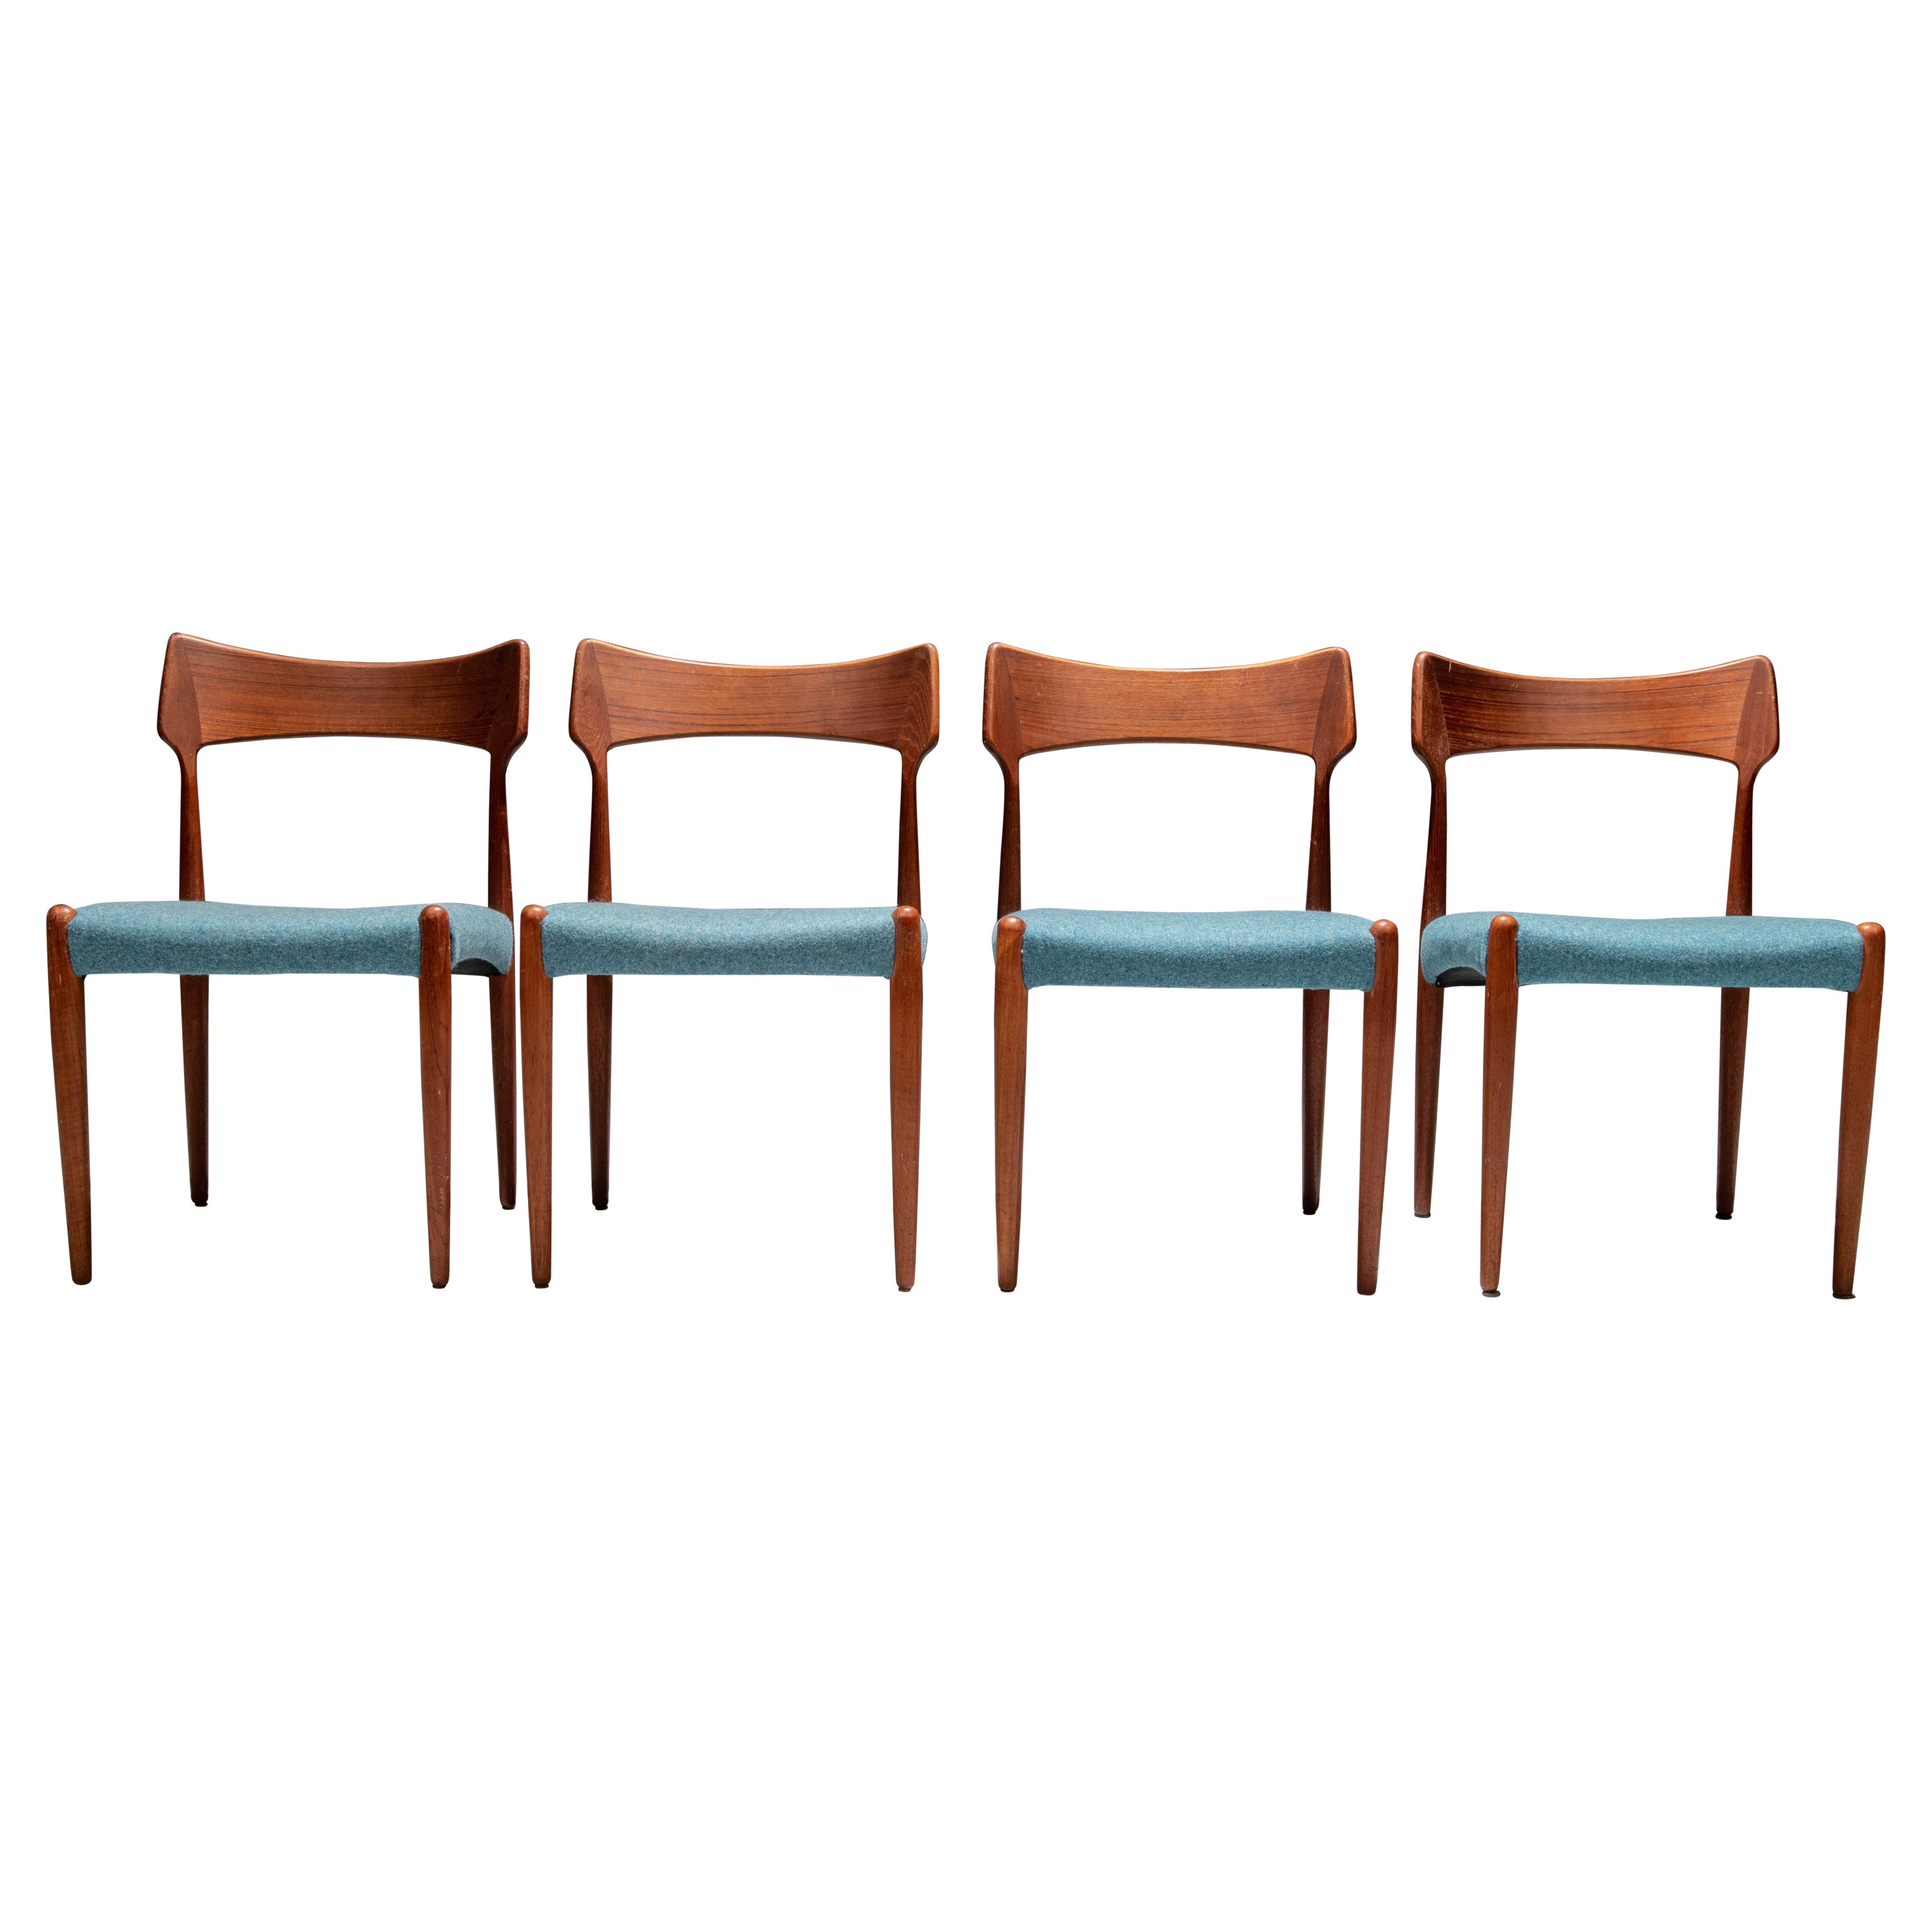 Set of 4 Dining Room Chairs by C. Linneberg for B. Pedersen, Denmark, 1970's